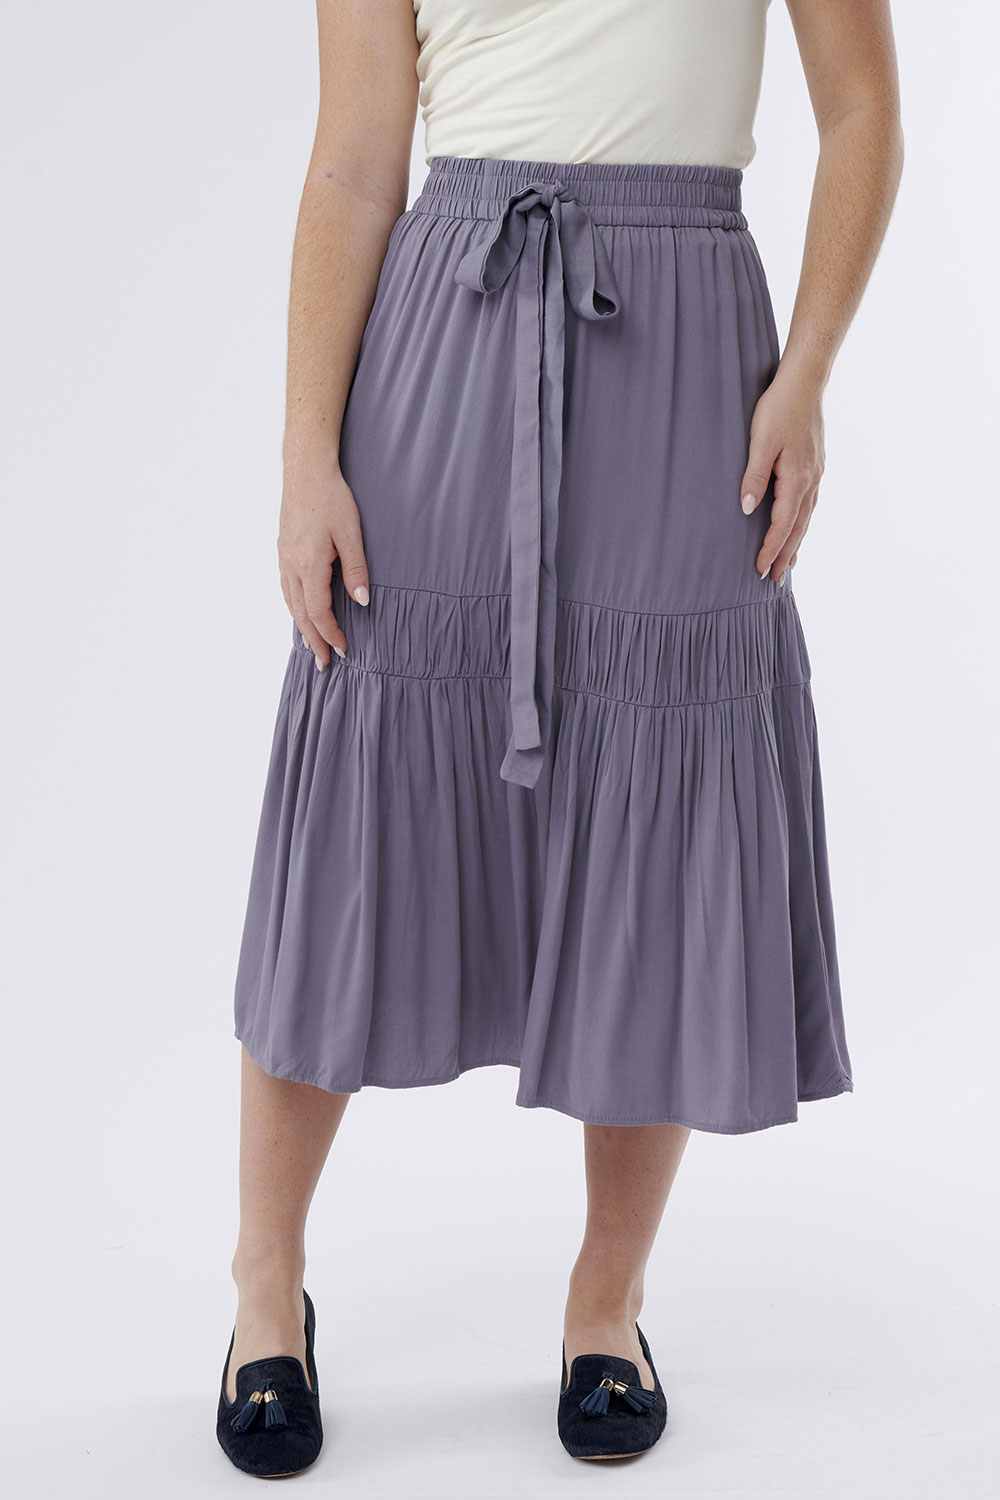 Skirt Tiered Waist Bow Gray Blue | Sweet Salt Modest Clothing